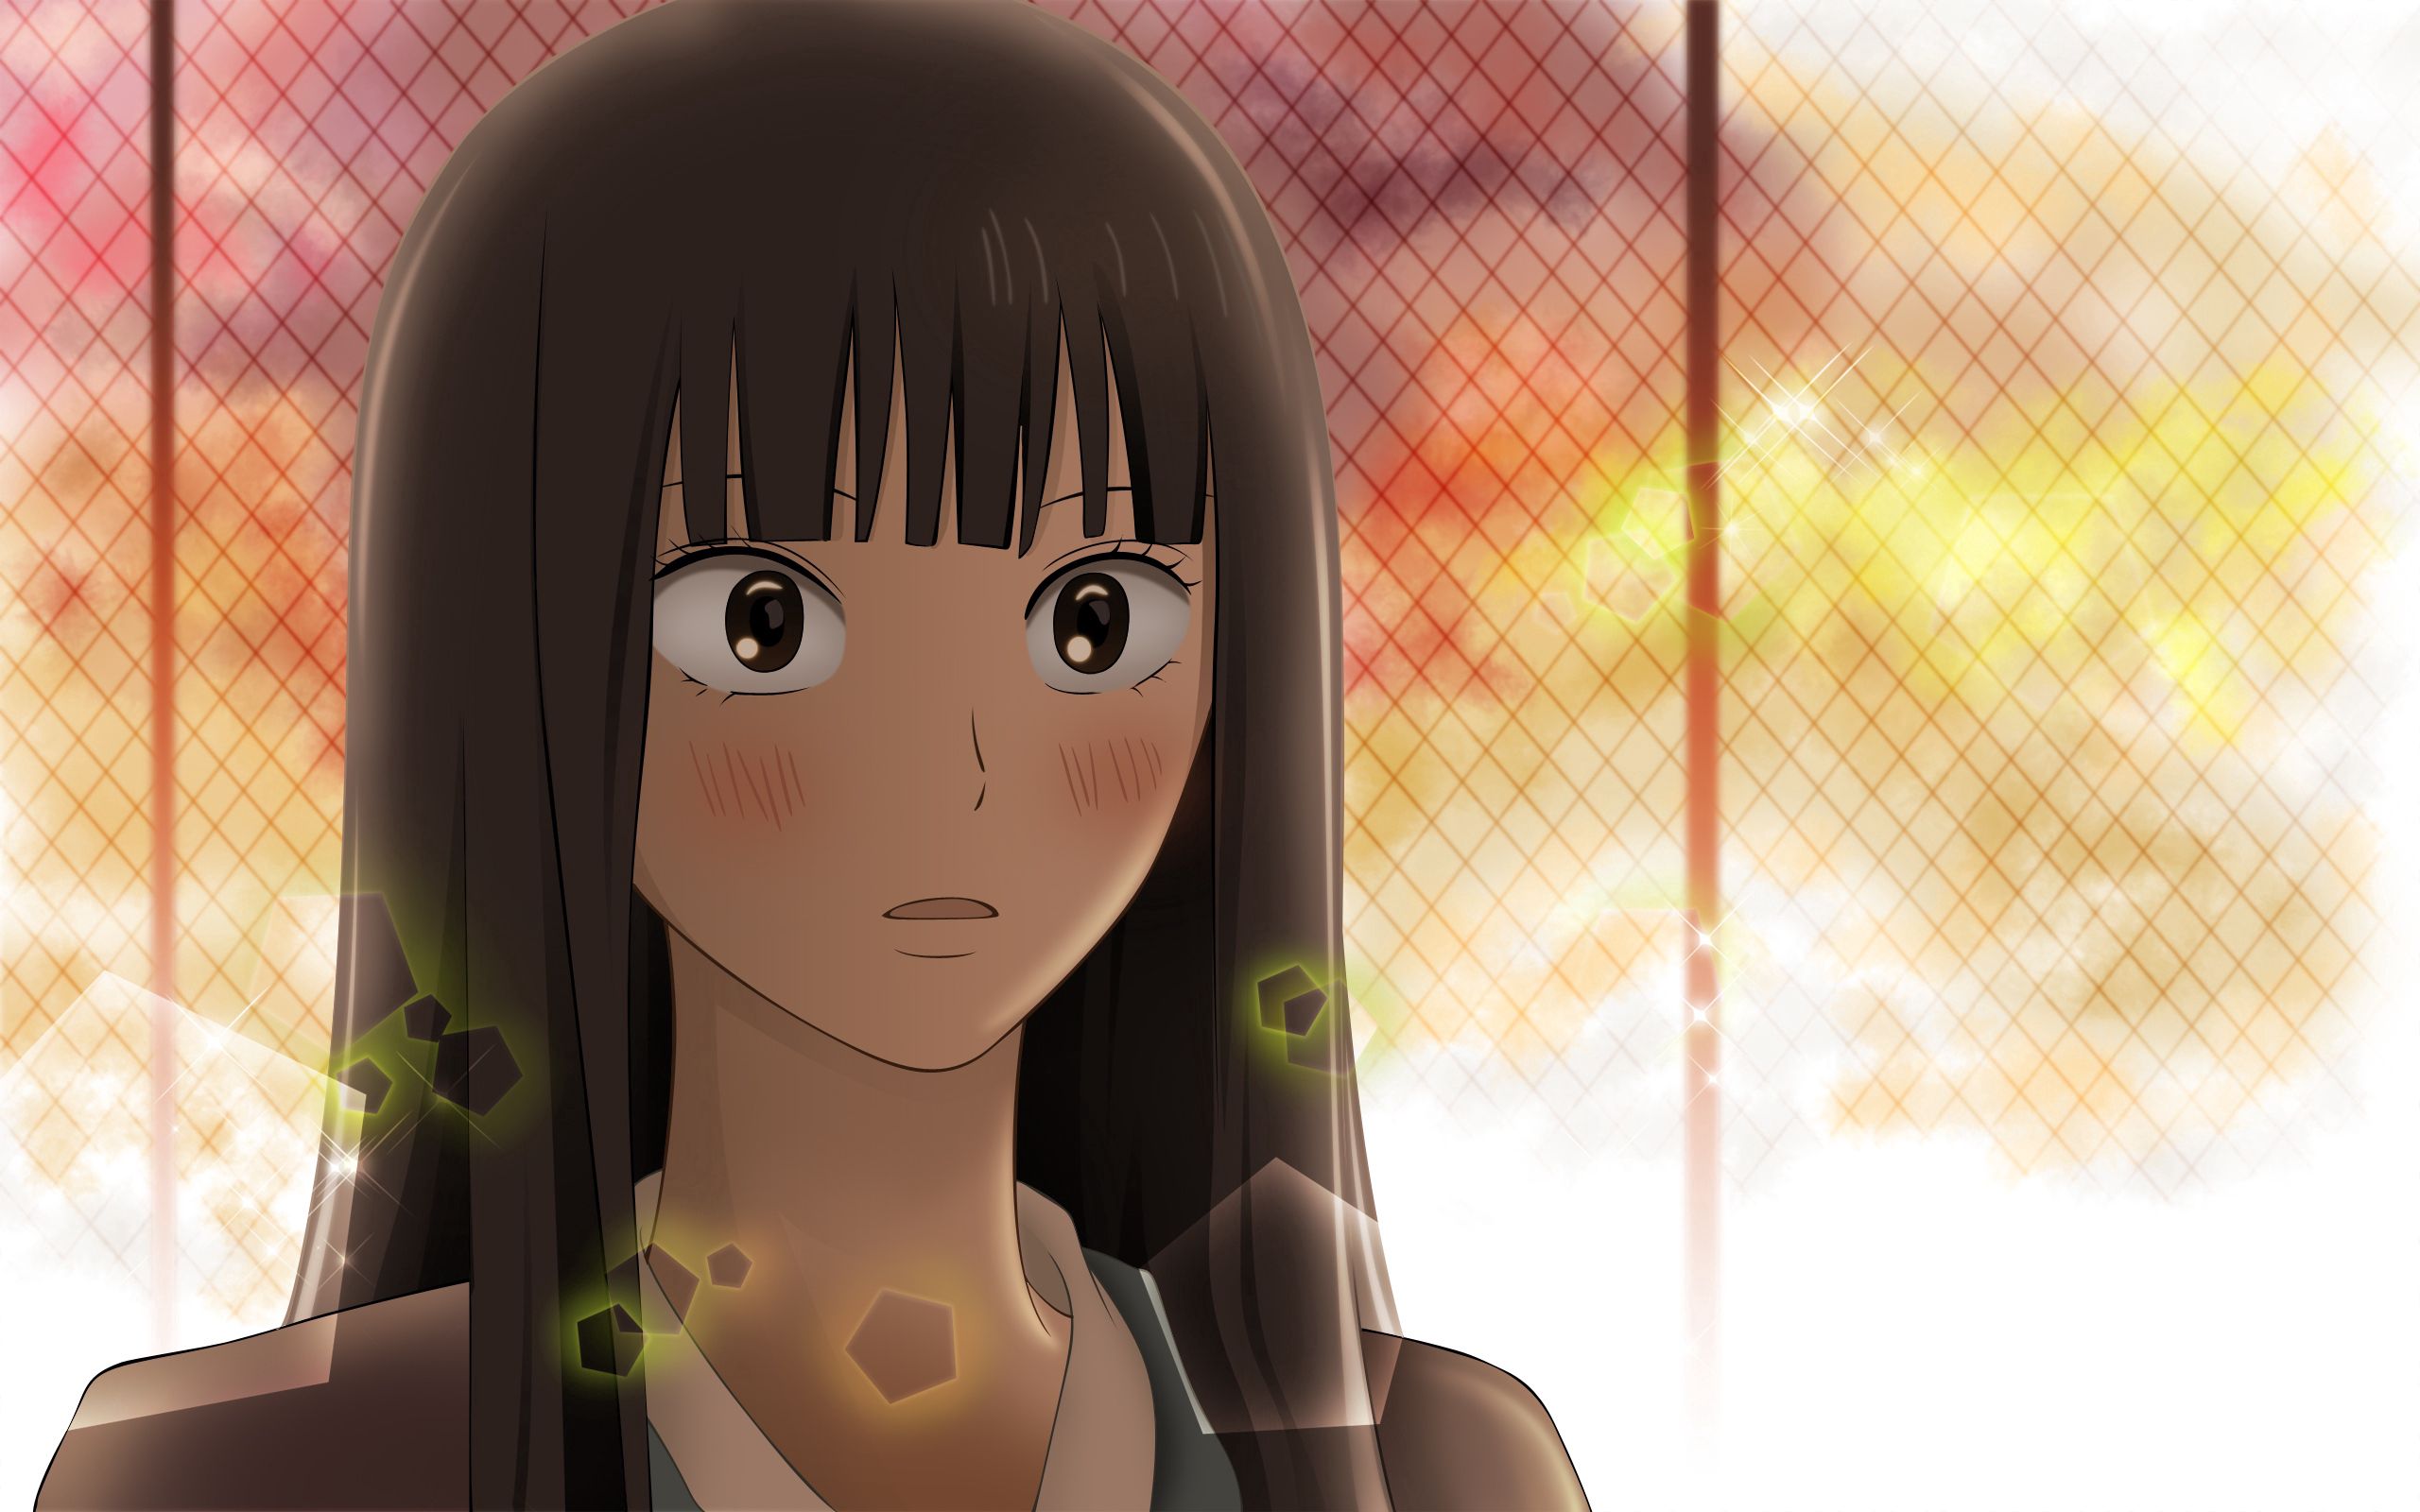 anime, sunset, girl, surprise, astonishment Image for desktop